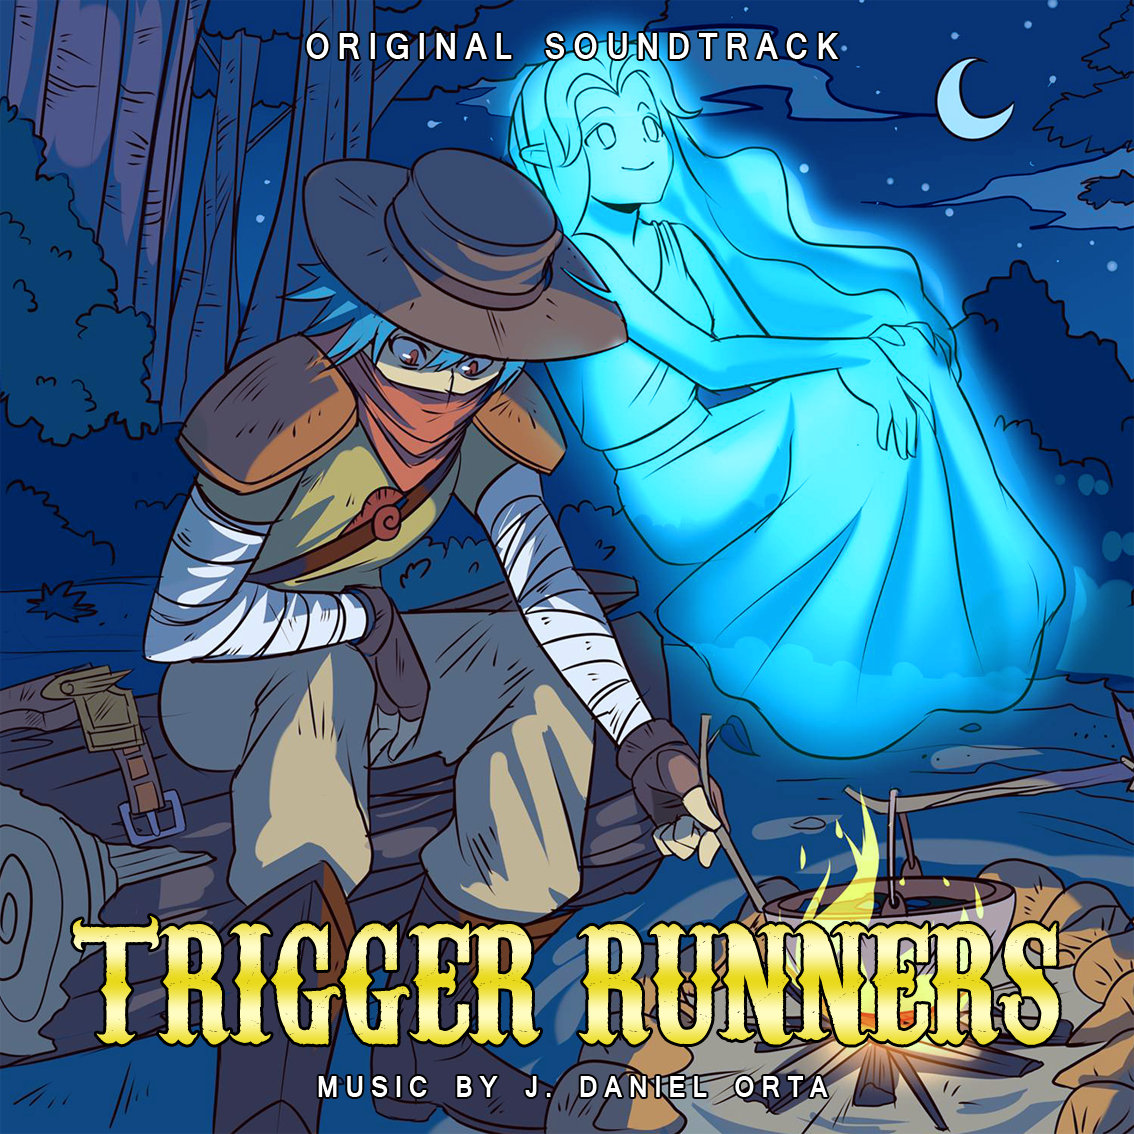 Runner soundtrack